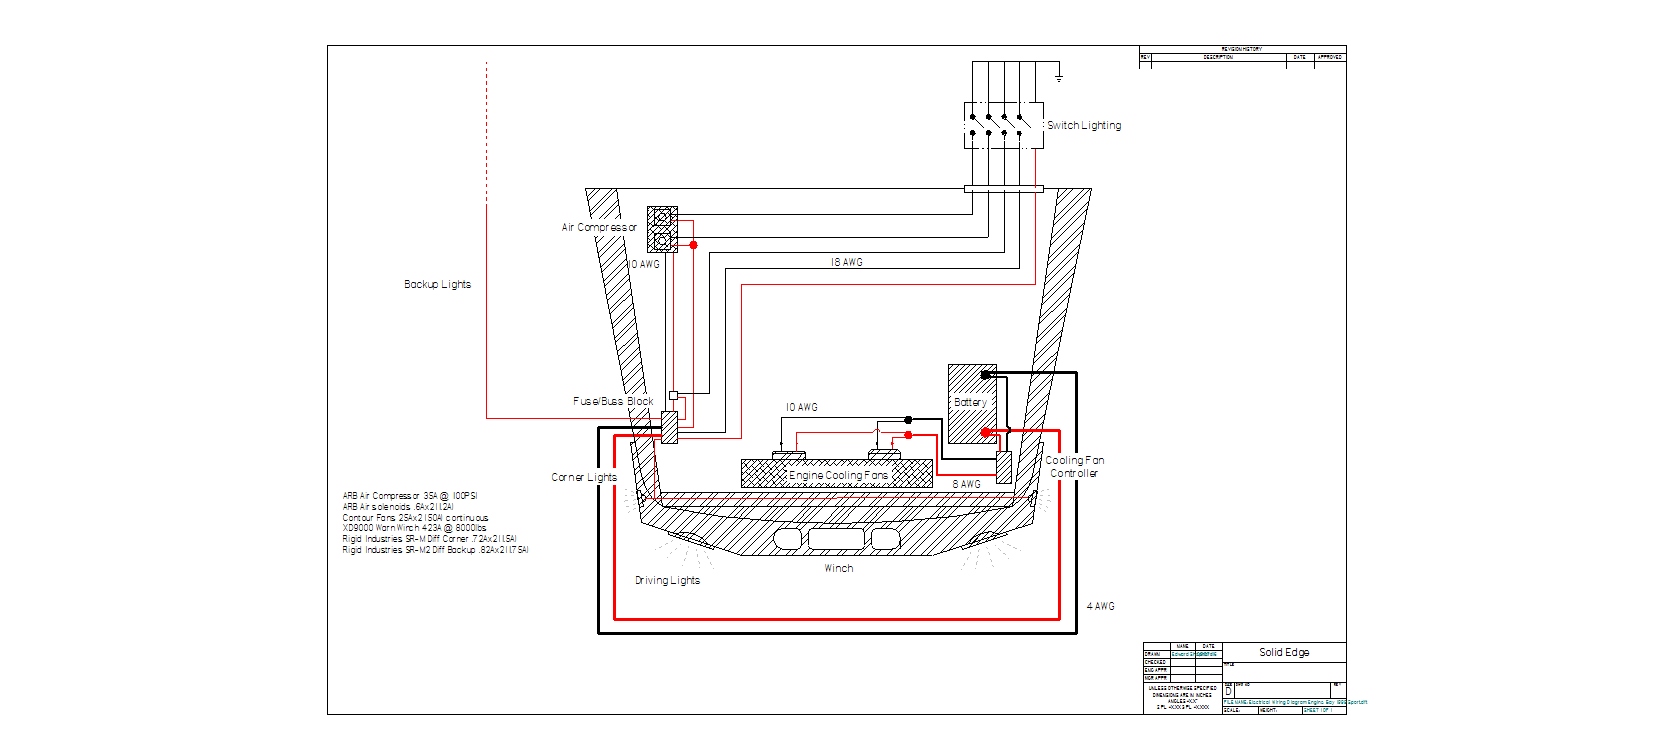 viair 480c wiring diagram